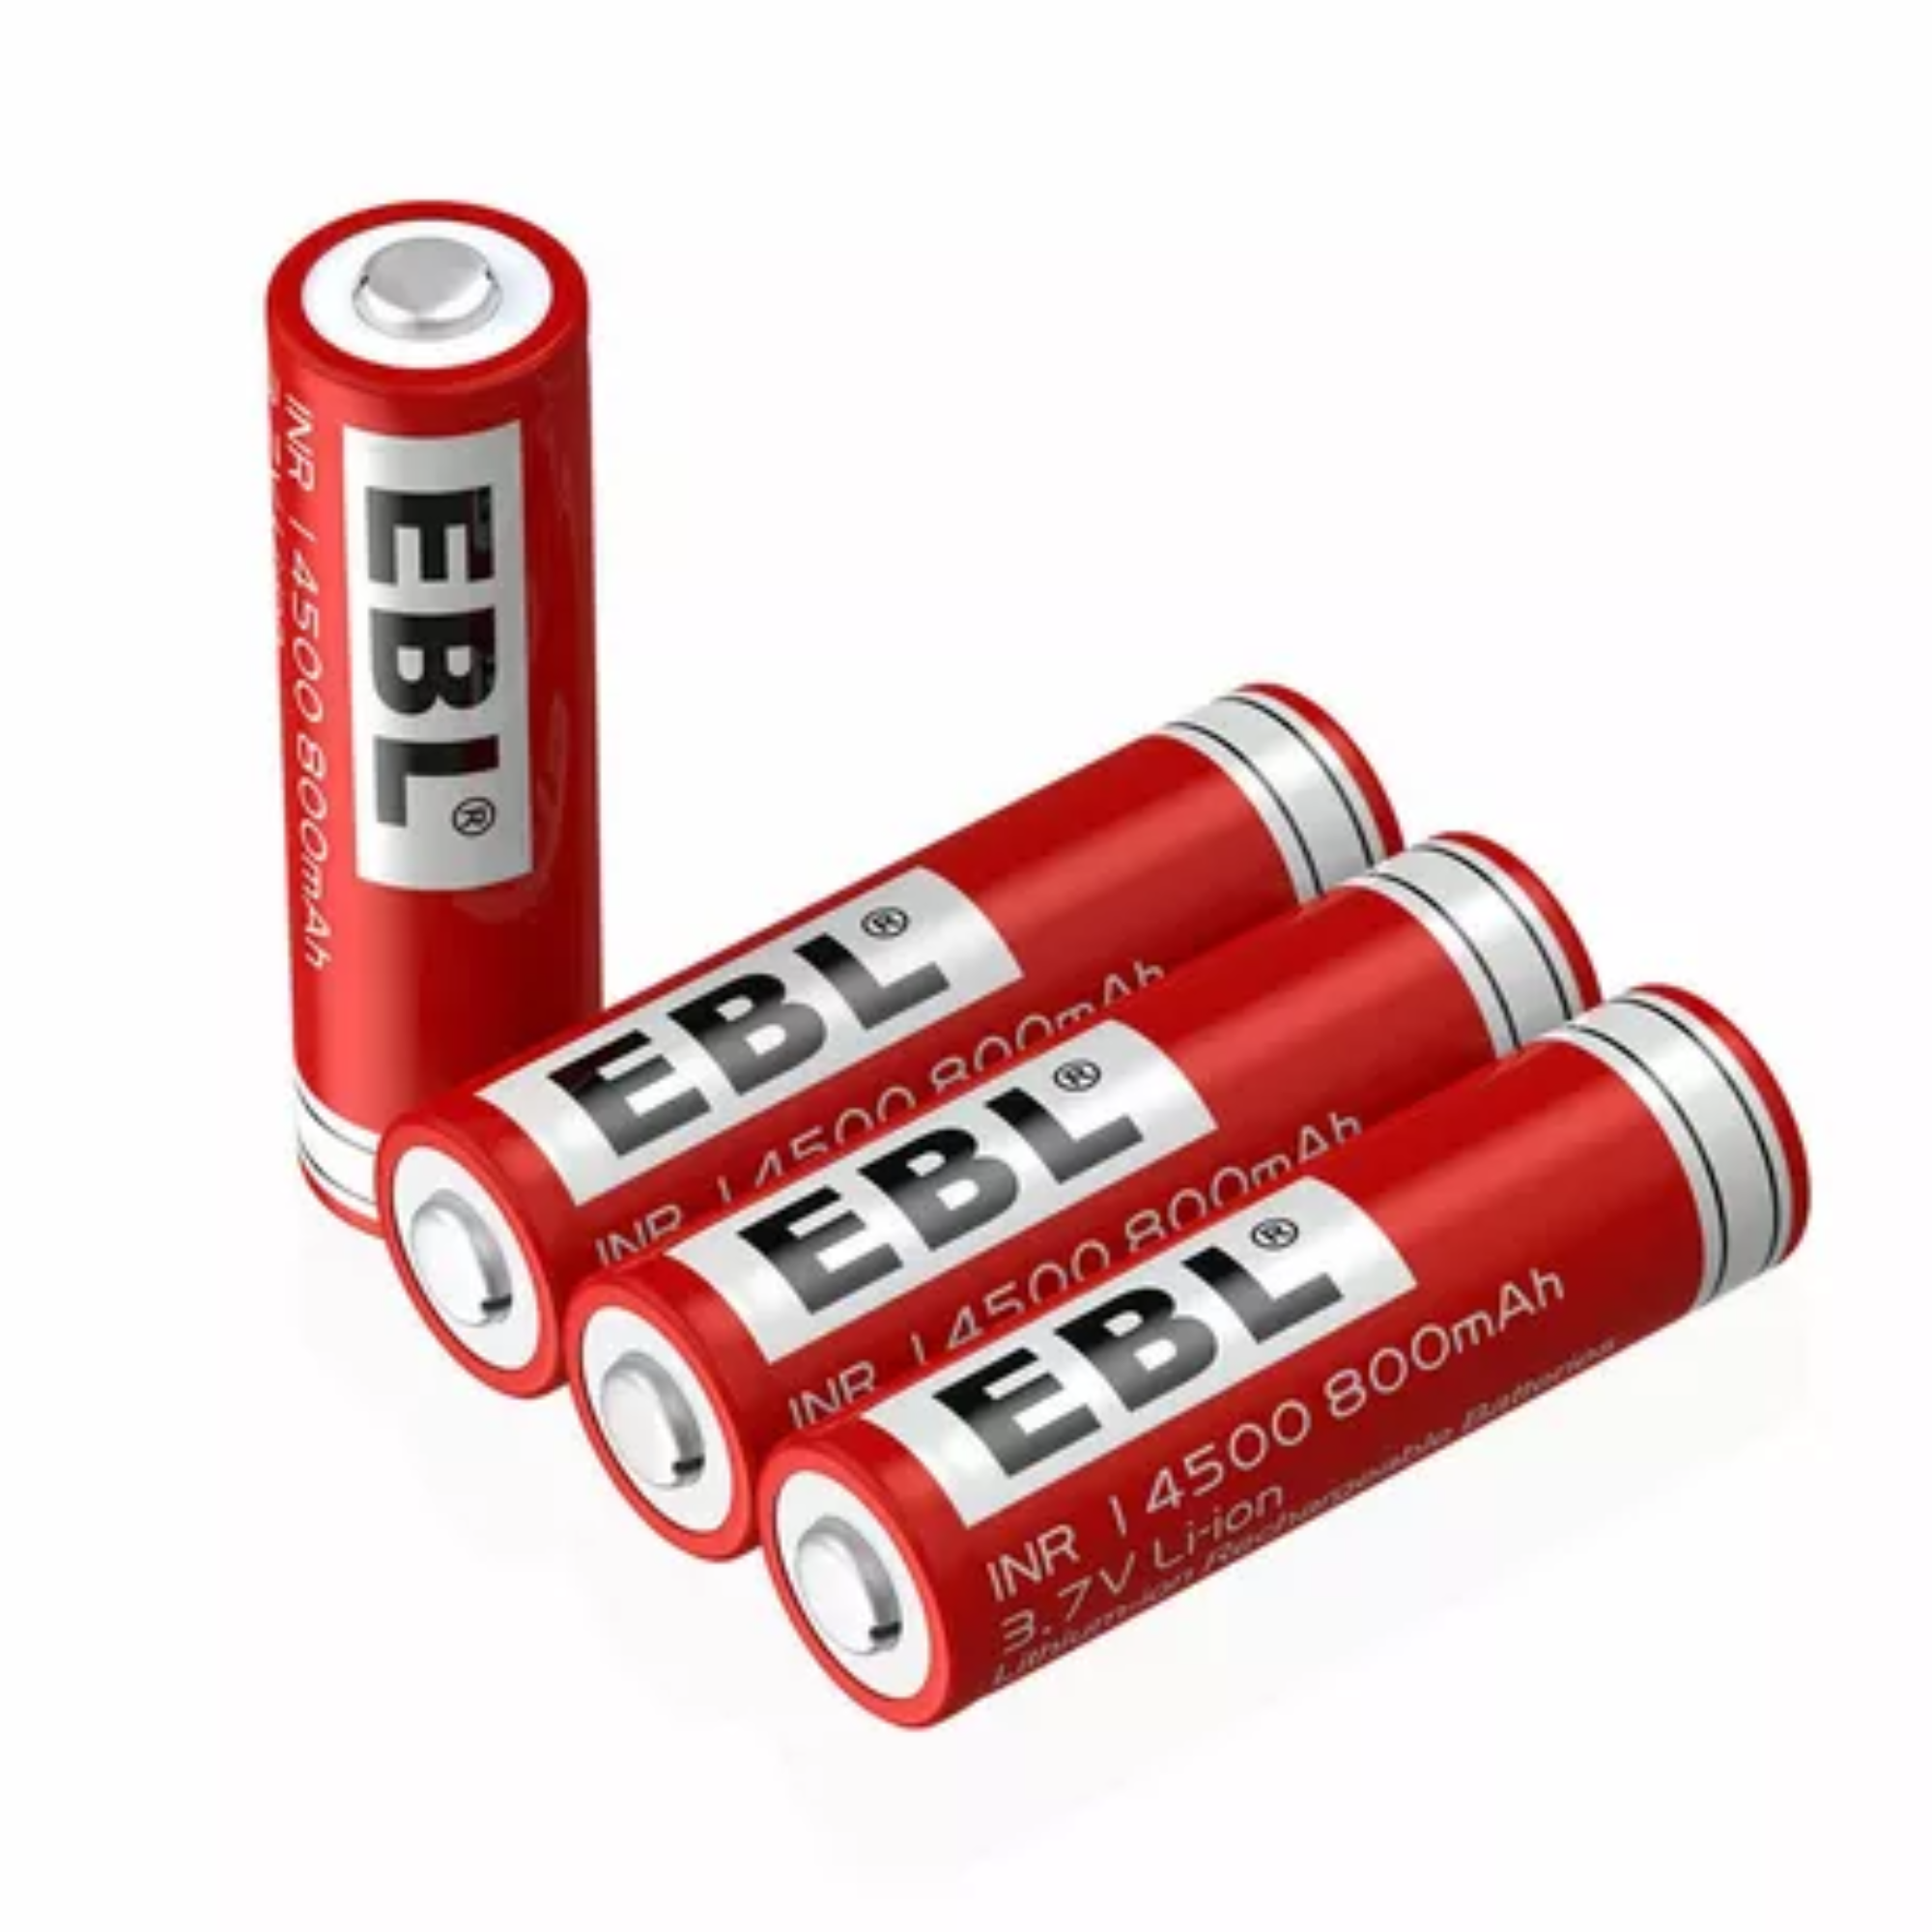 16 baterías recargables AAA NiMH 800mAh 1.2V 1500 ciclos batería nueva  energía